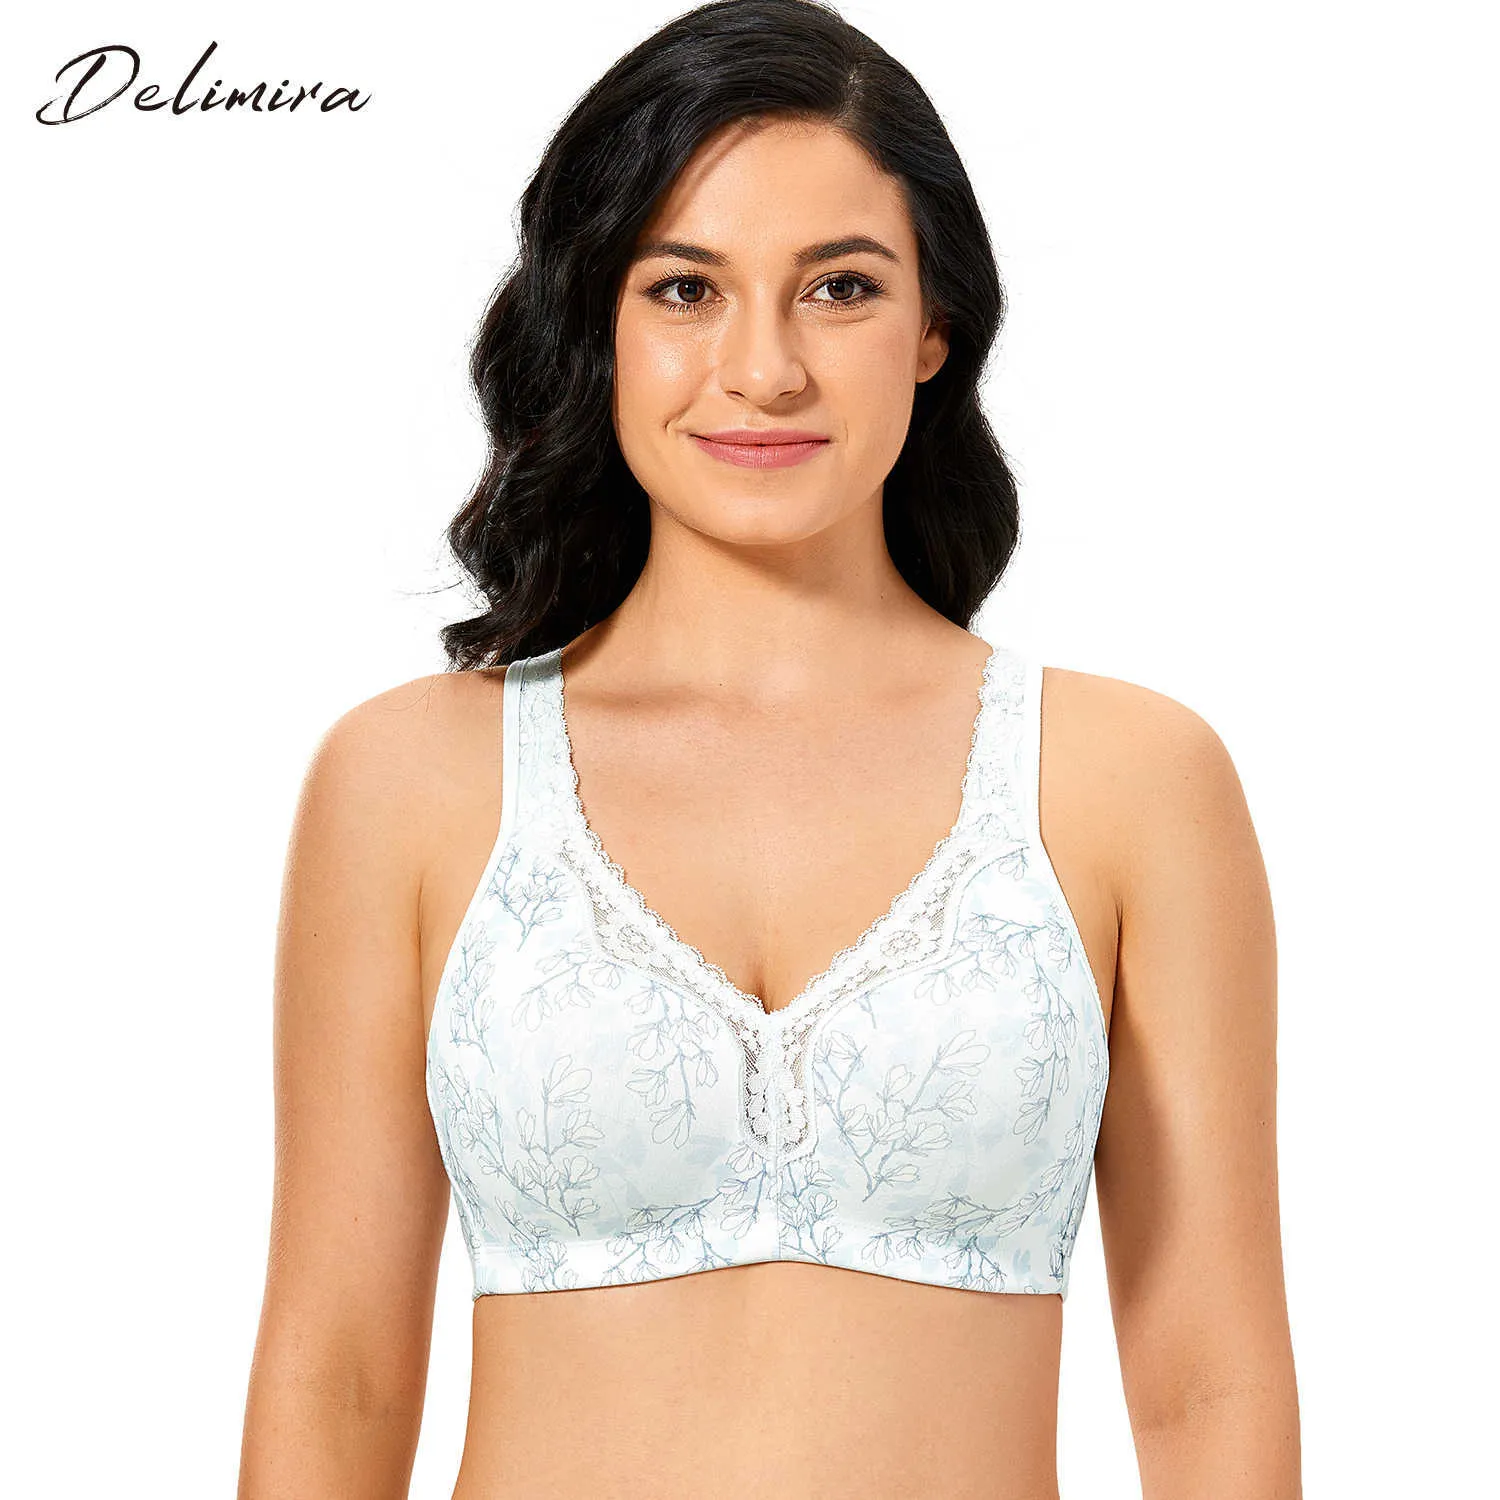 Delimira Women's Lace Non-Foam Comfort Cotton Wire-Free Plus Size BH 210623